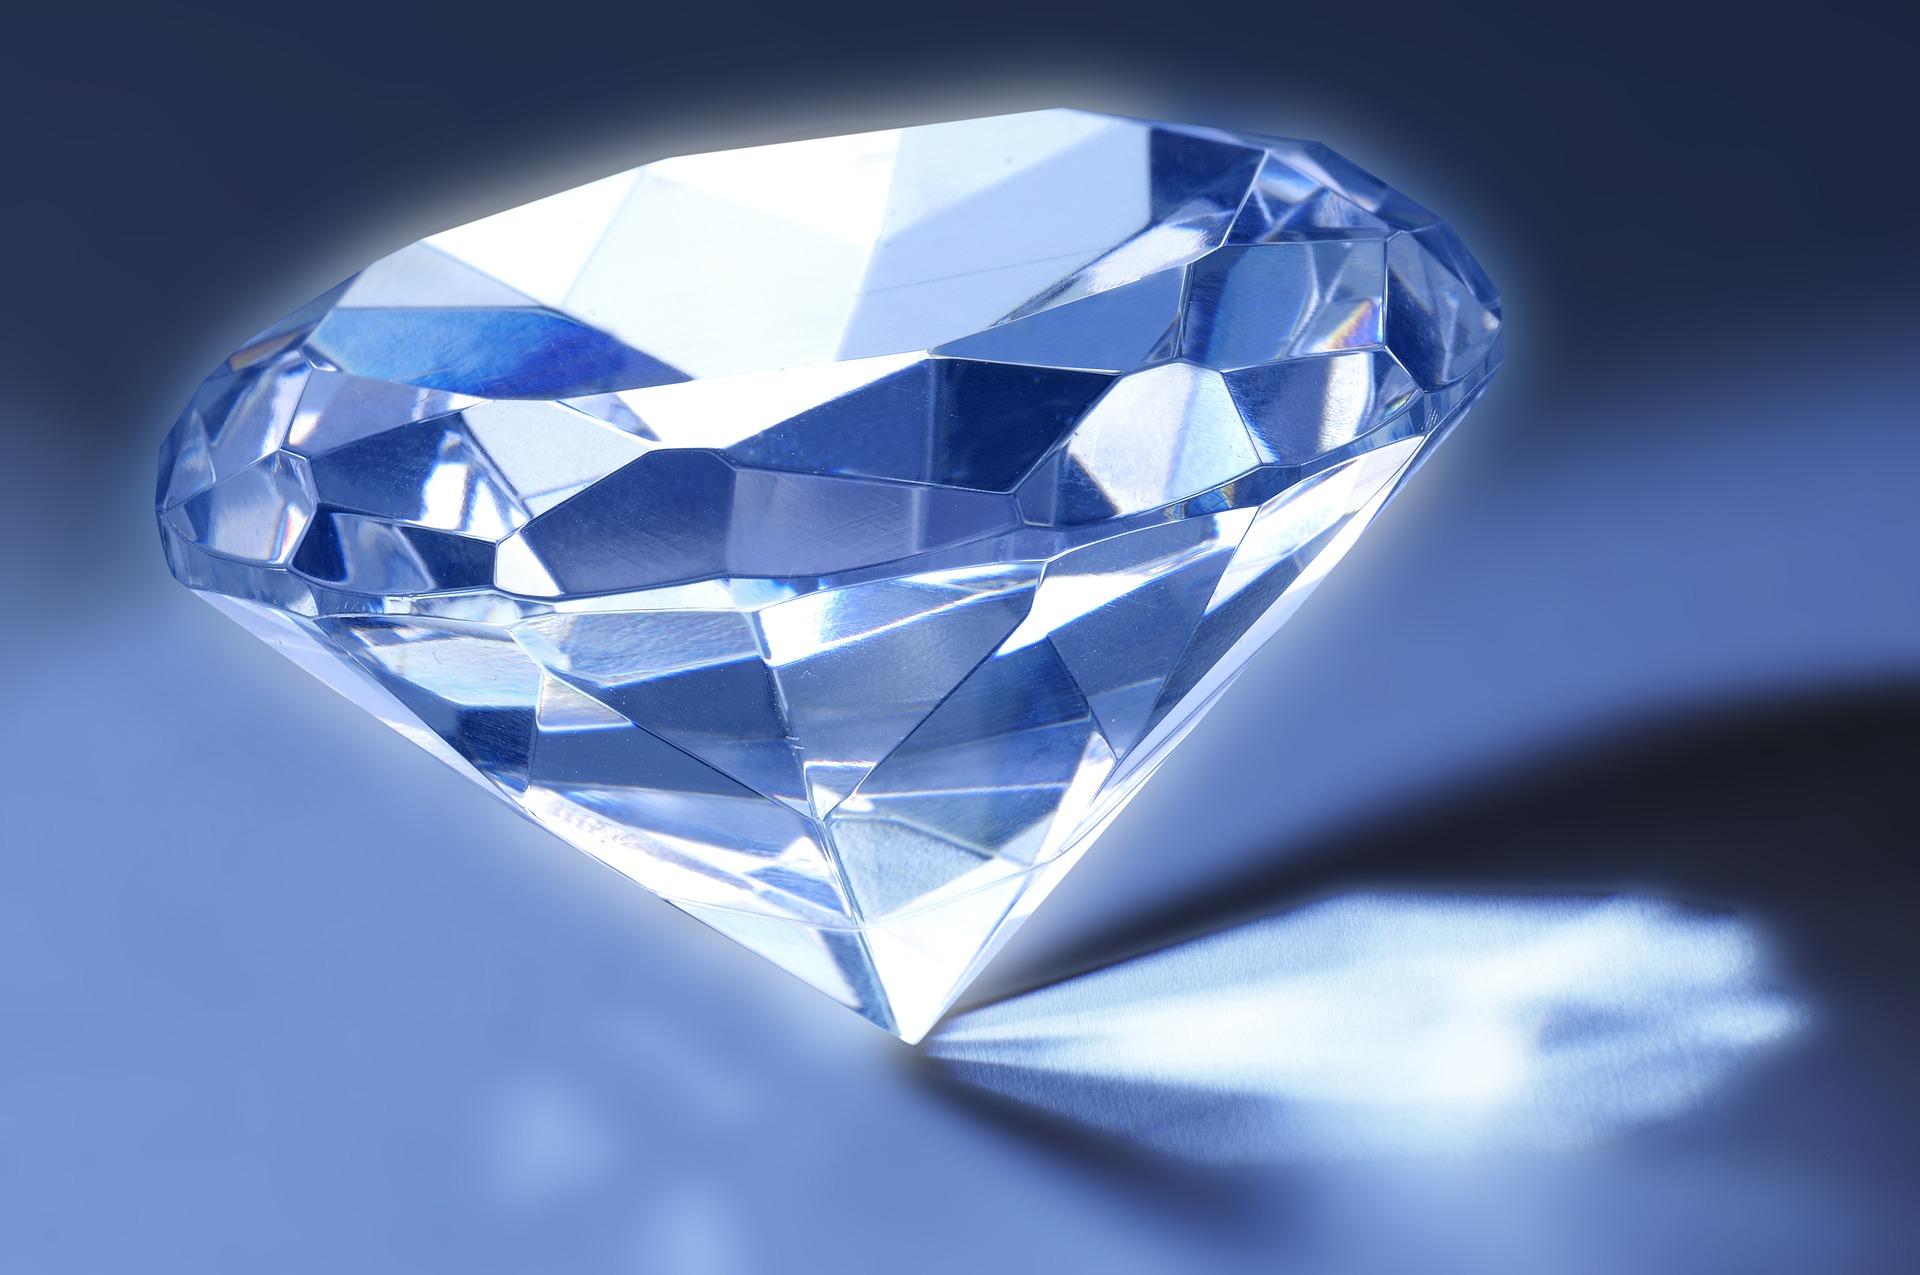 Gelukkig Veel Tactiel gevoel Diamanten: uit de mijn of uit een fabriek? | Natuurwijzer